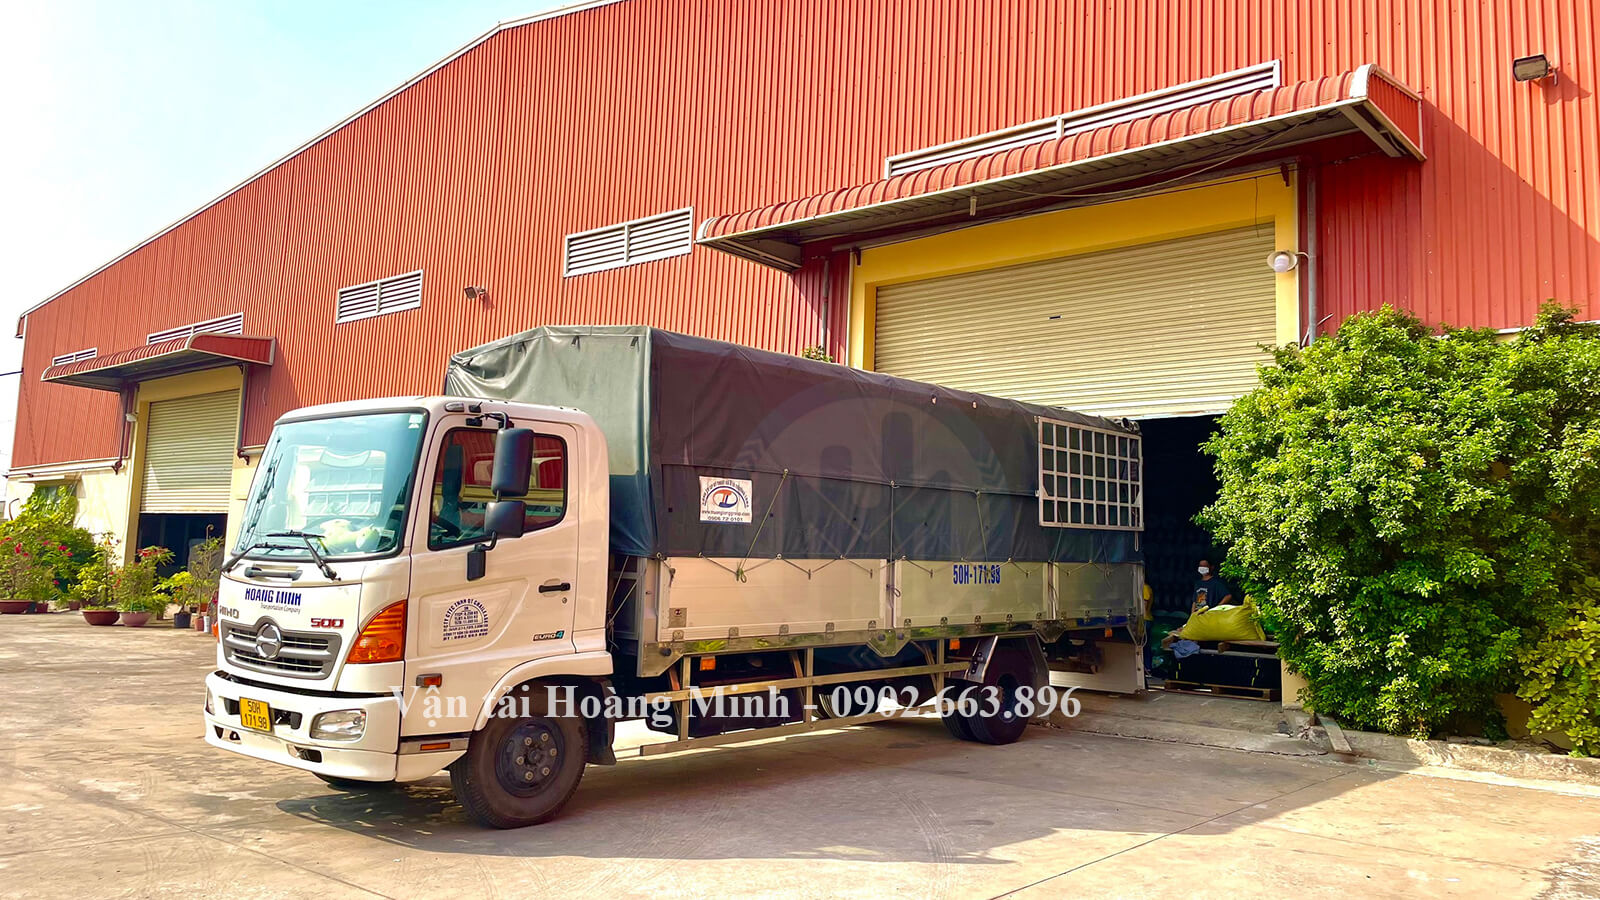 Hoàng Minh vận chuyển hàng hoá bằng xe tải cho khách tại KCN Hội An.jpg